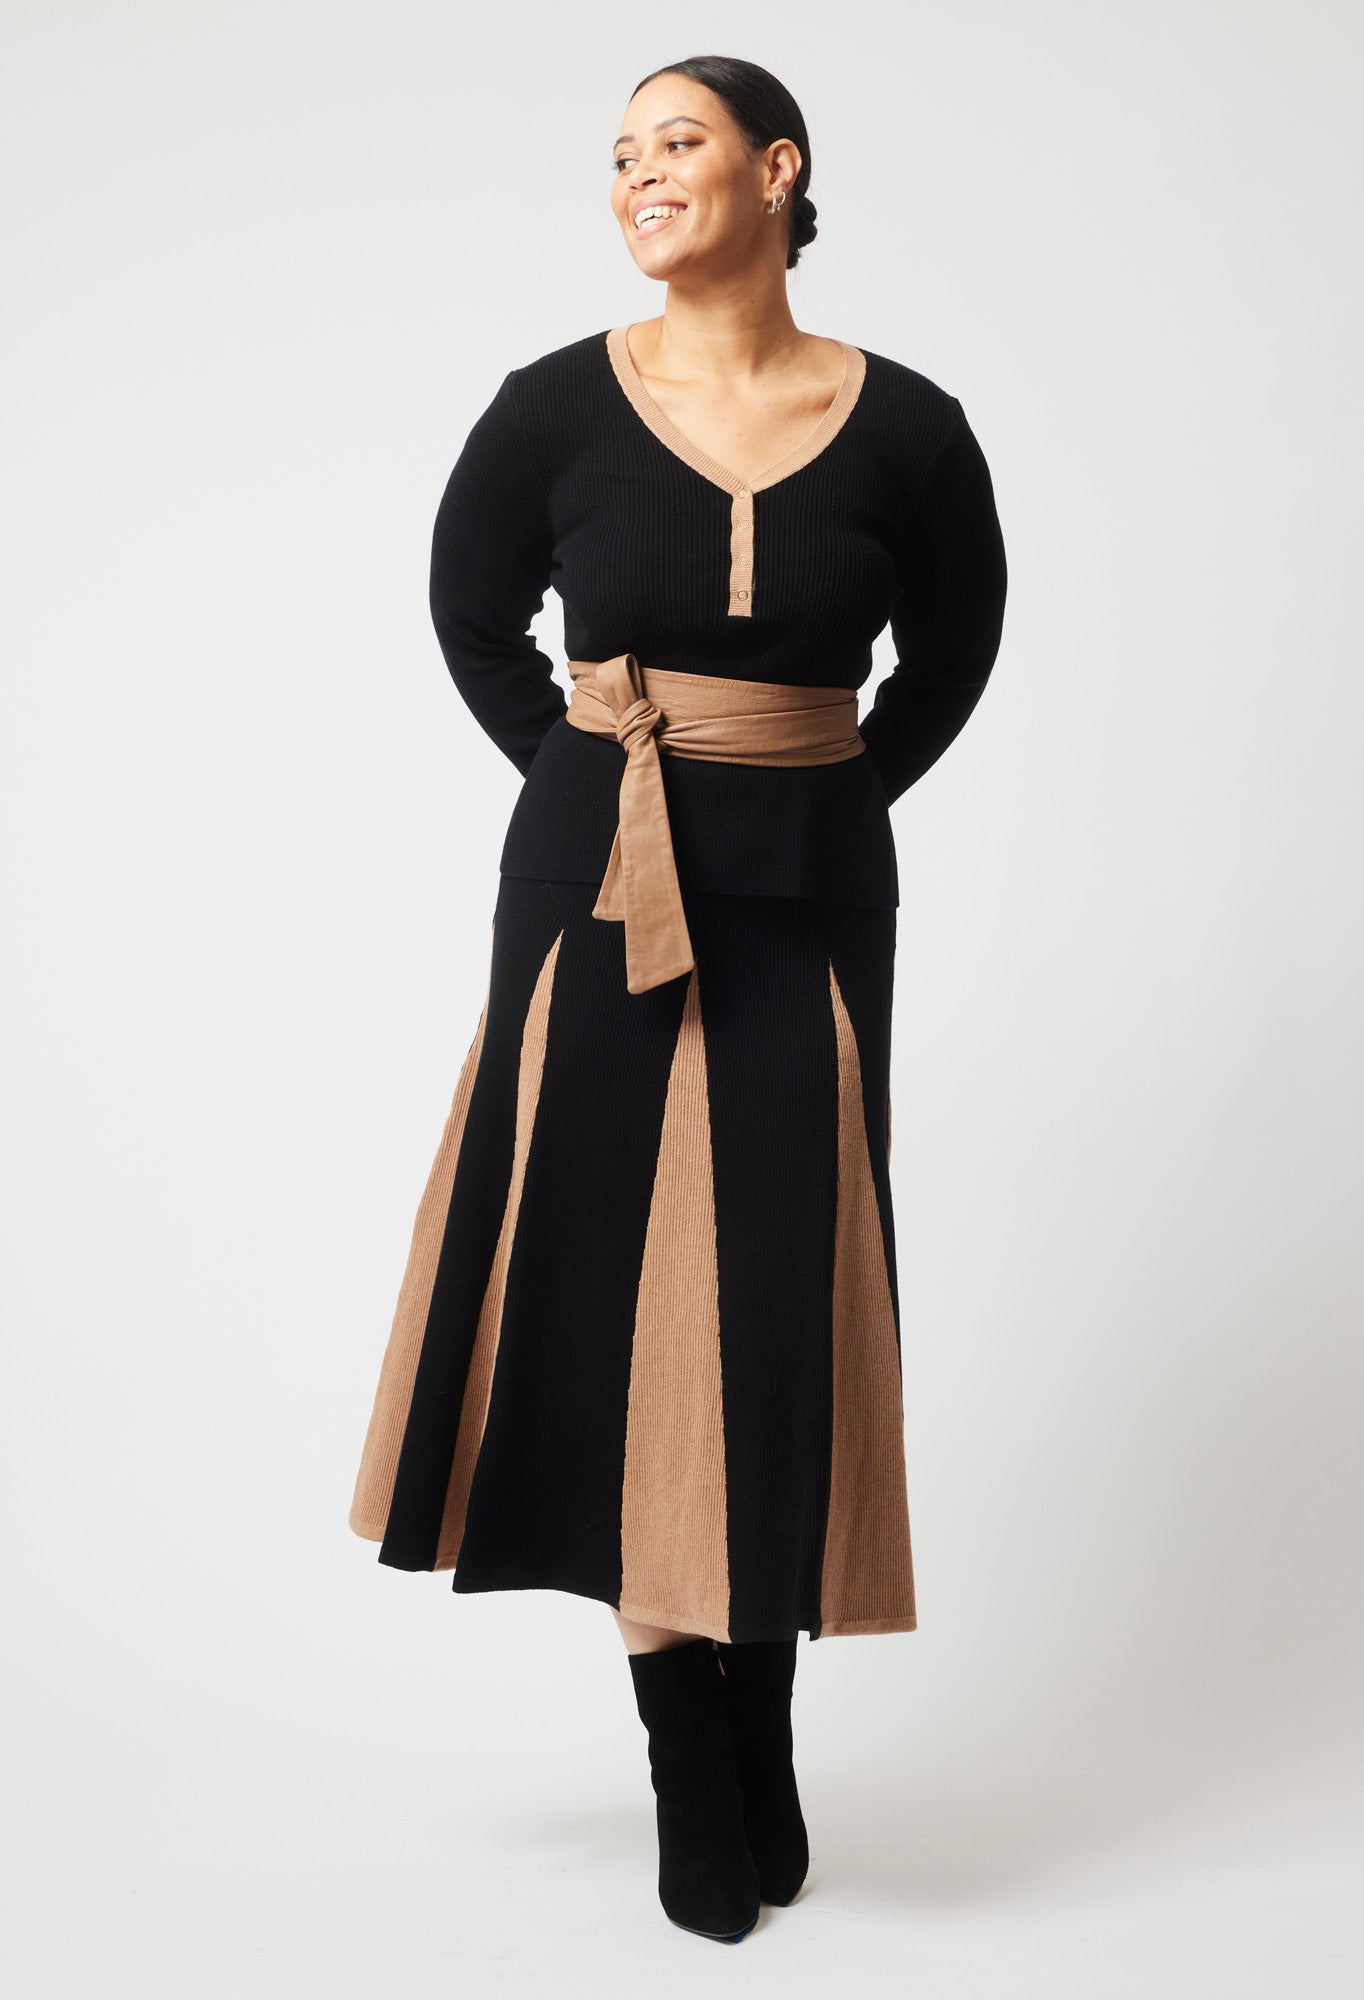 Nova Merino Wool Knit Skirt in Black/Husk